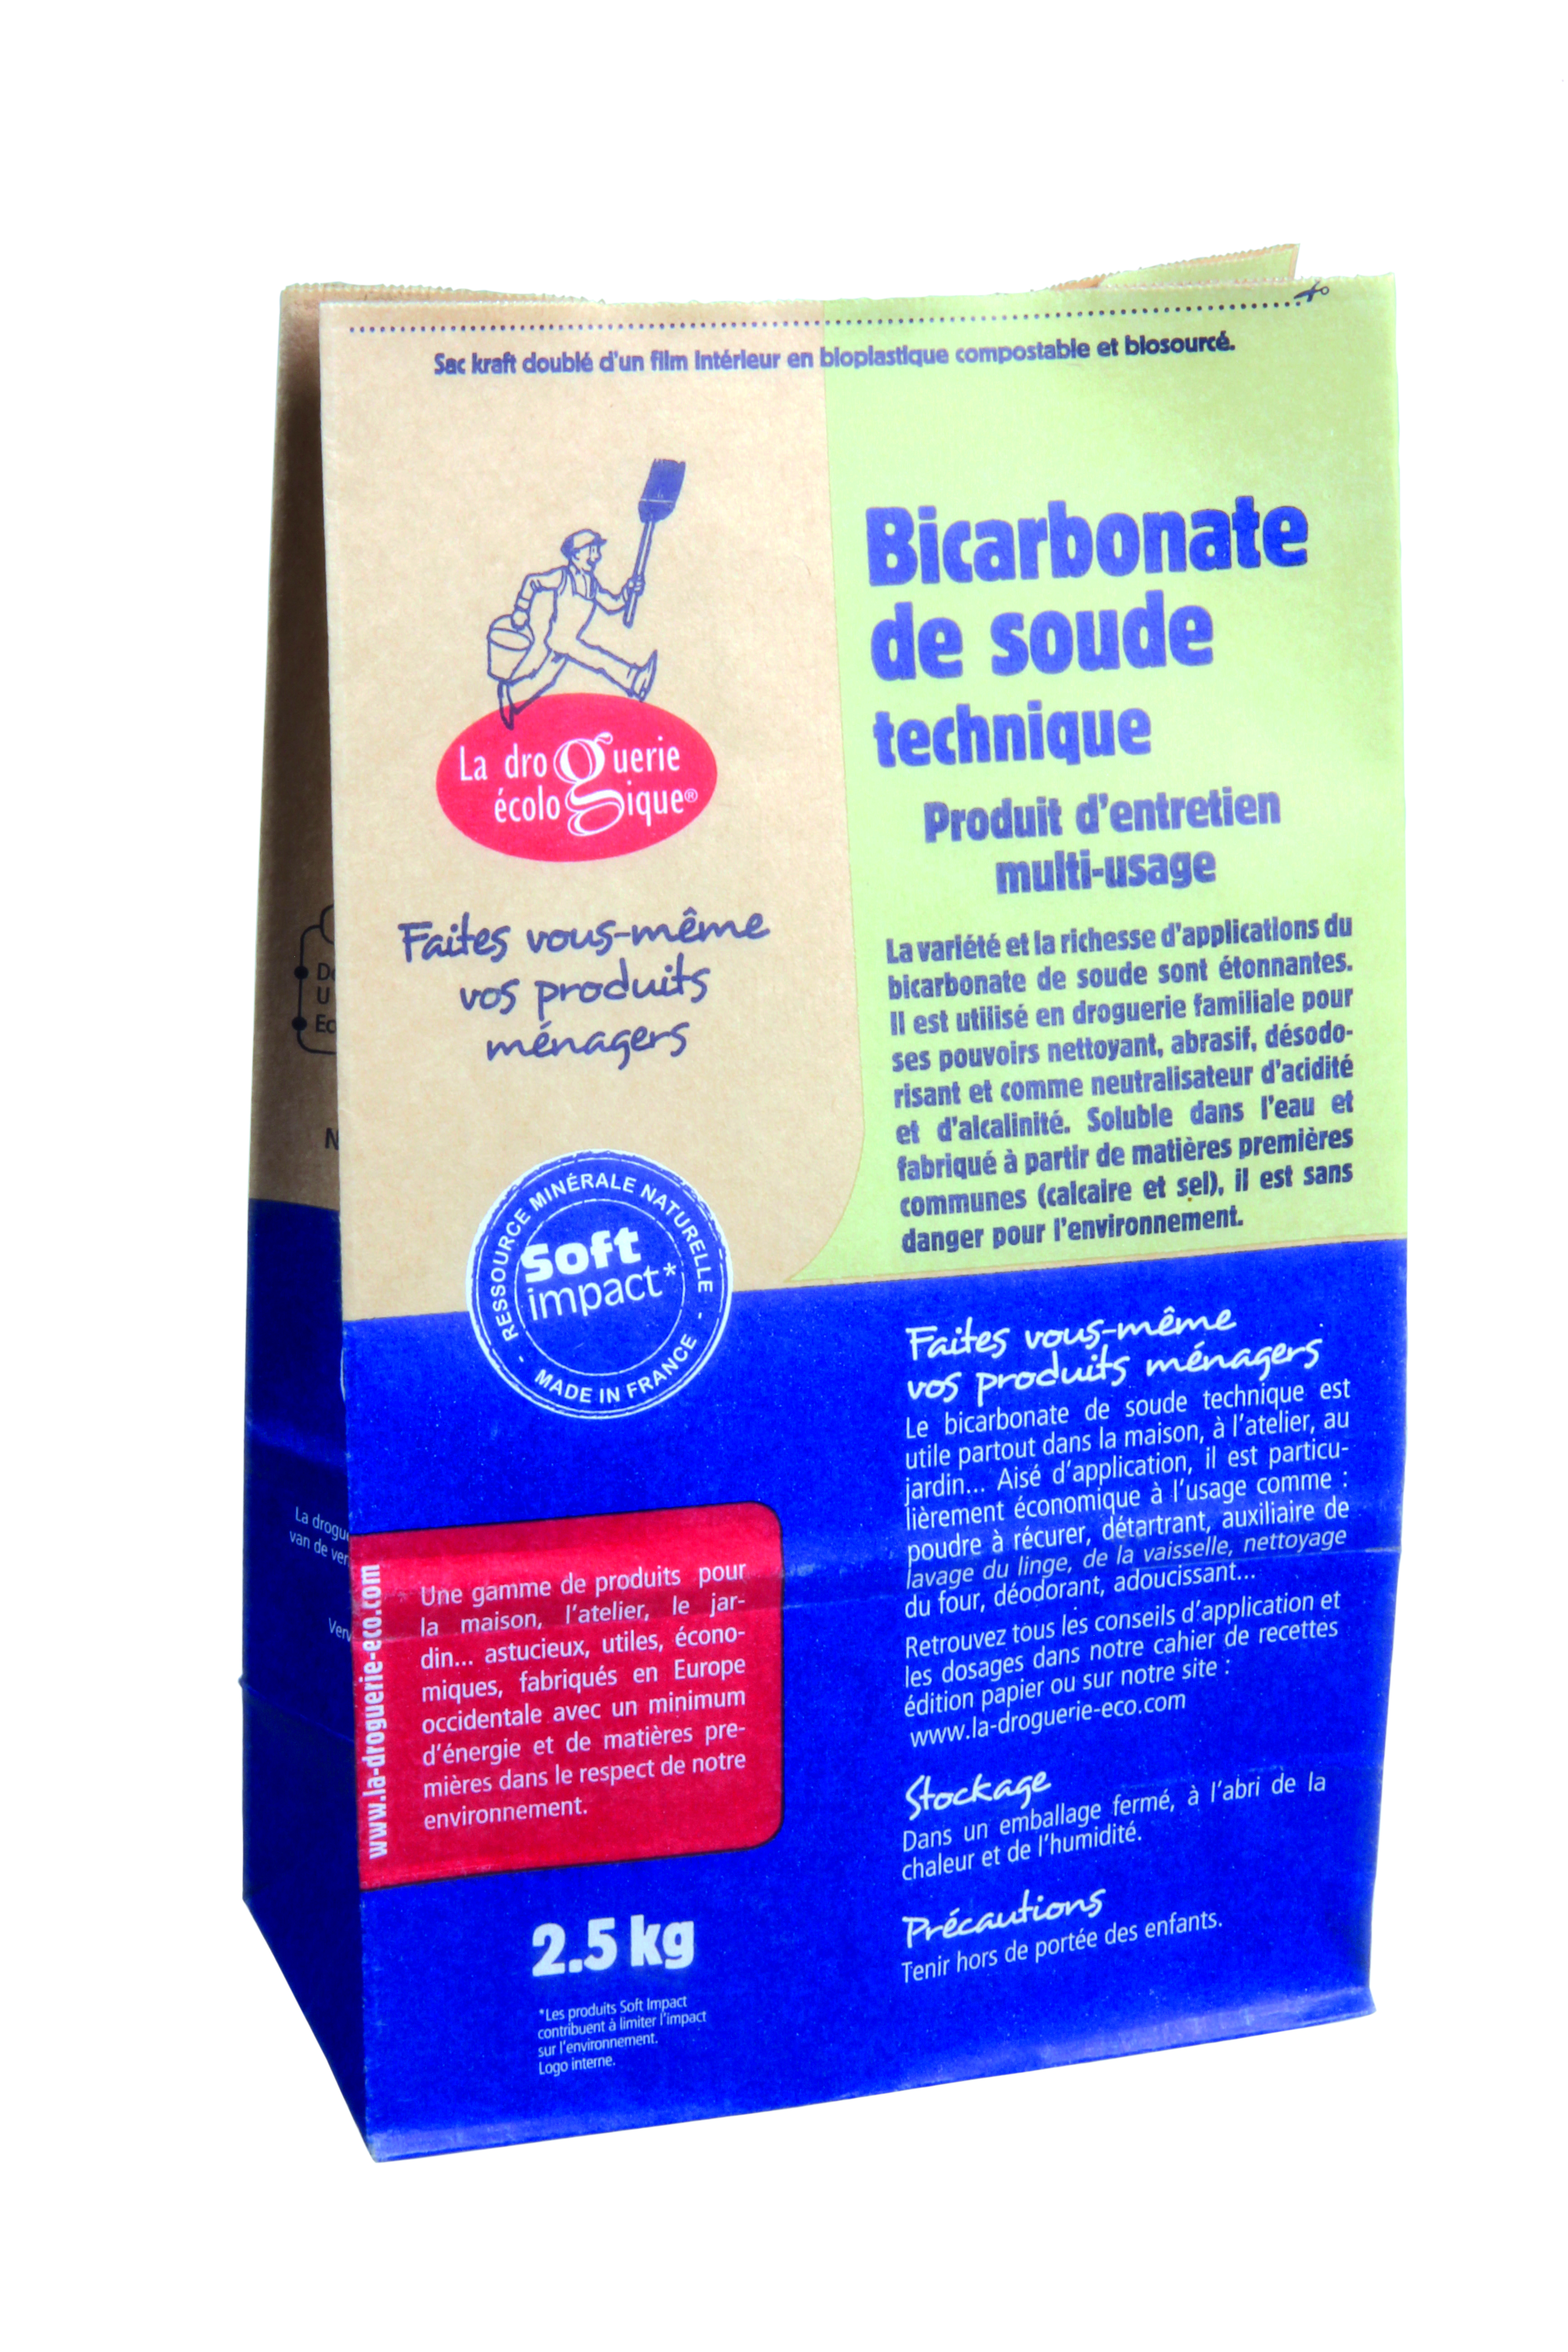 La Droguerie Ecologique Bicarbonate de soude technique 2.5kg